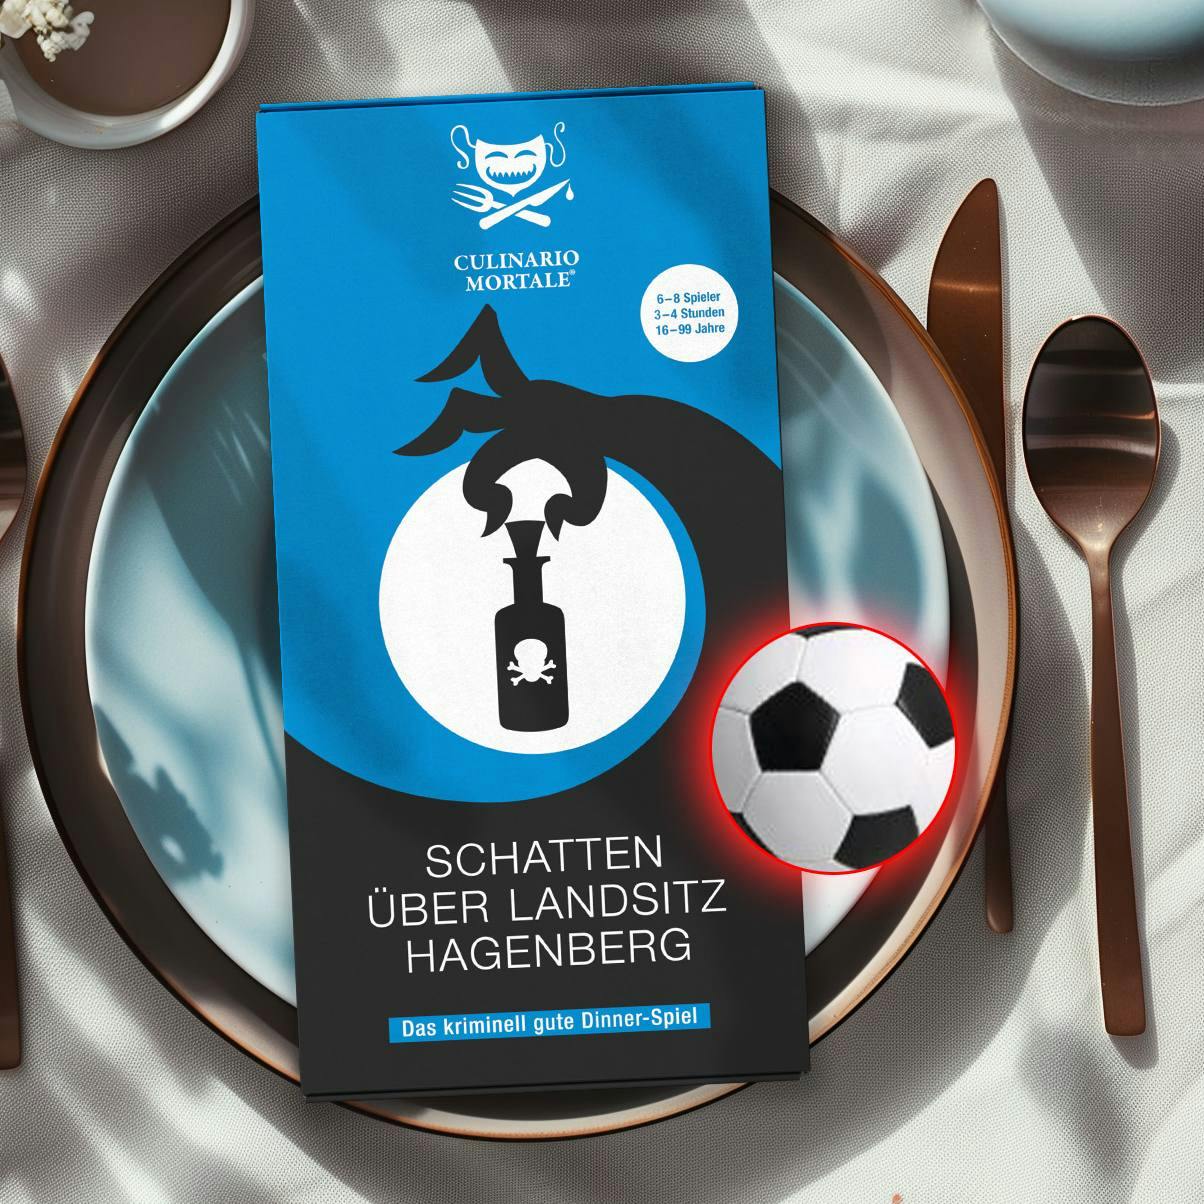 Wir gratulieren der Deutschen Fußballnationalmannschaft zum Einzug ins Achtelfinale der EM!
Hättet ihr Lust auf ein Krimi-Dinner, das in der Welt des Fußballs spielt? Verratet es uns in den Kommentaren!

#culinariomortale #krimidinner🔪🕵 #DFBTeam #Em ##fussballEM #deutschenationalmannschaft #deutschland #sommer